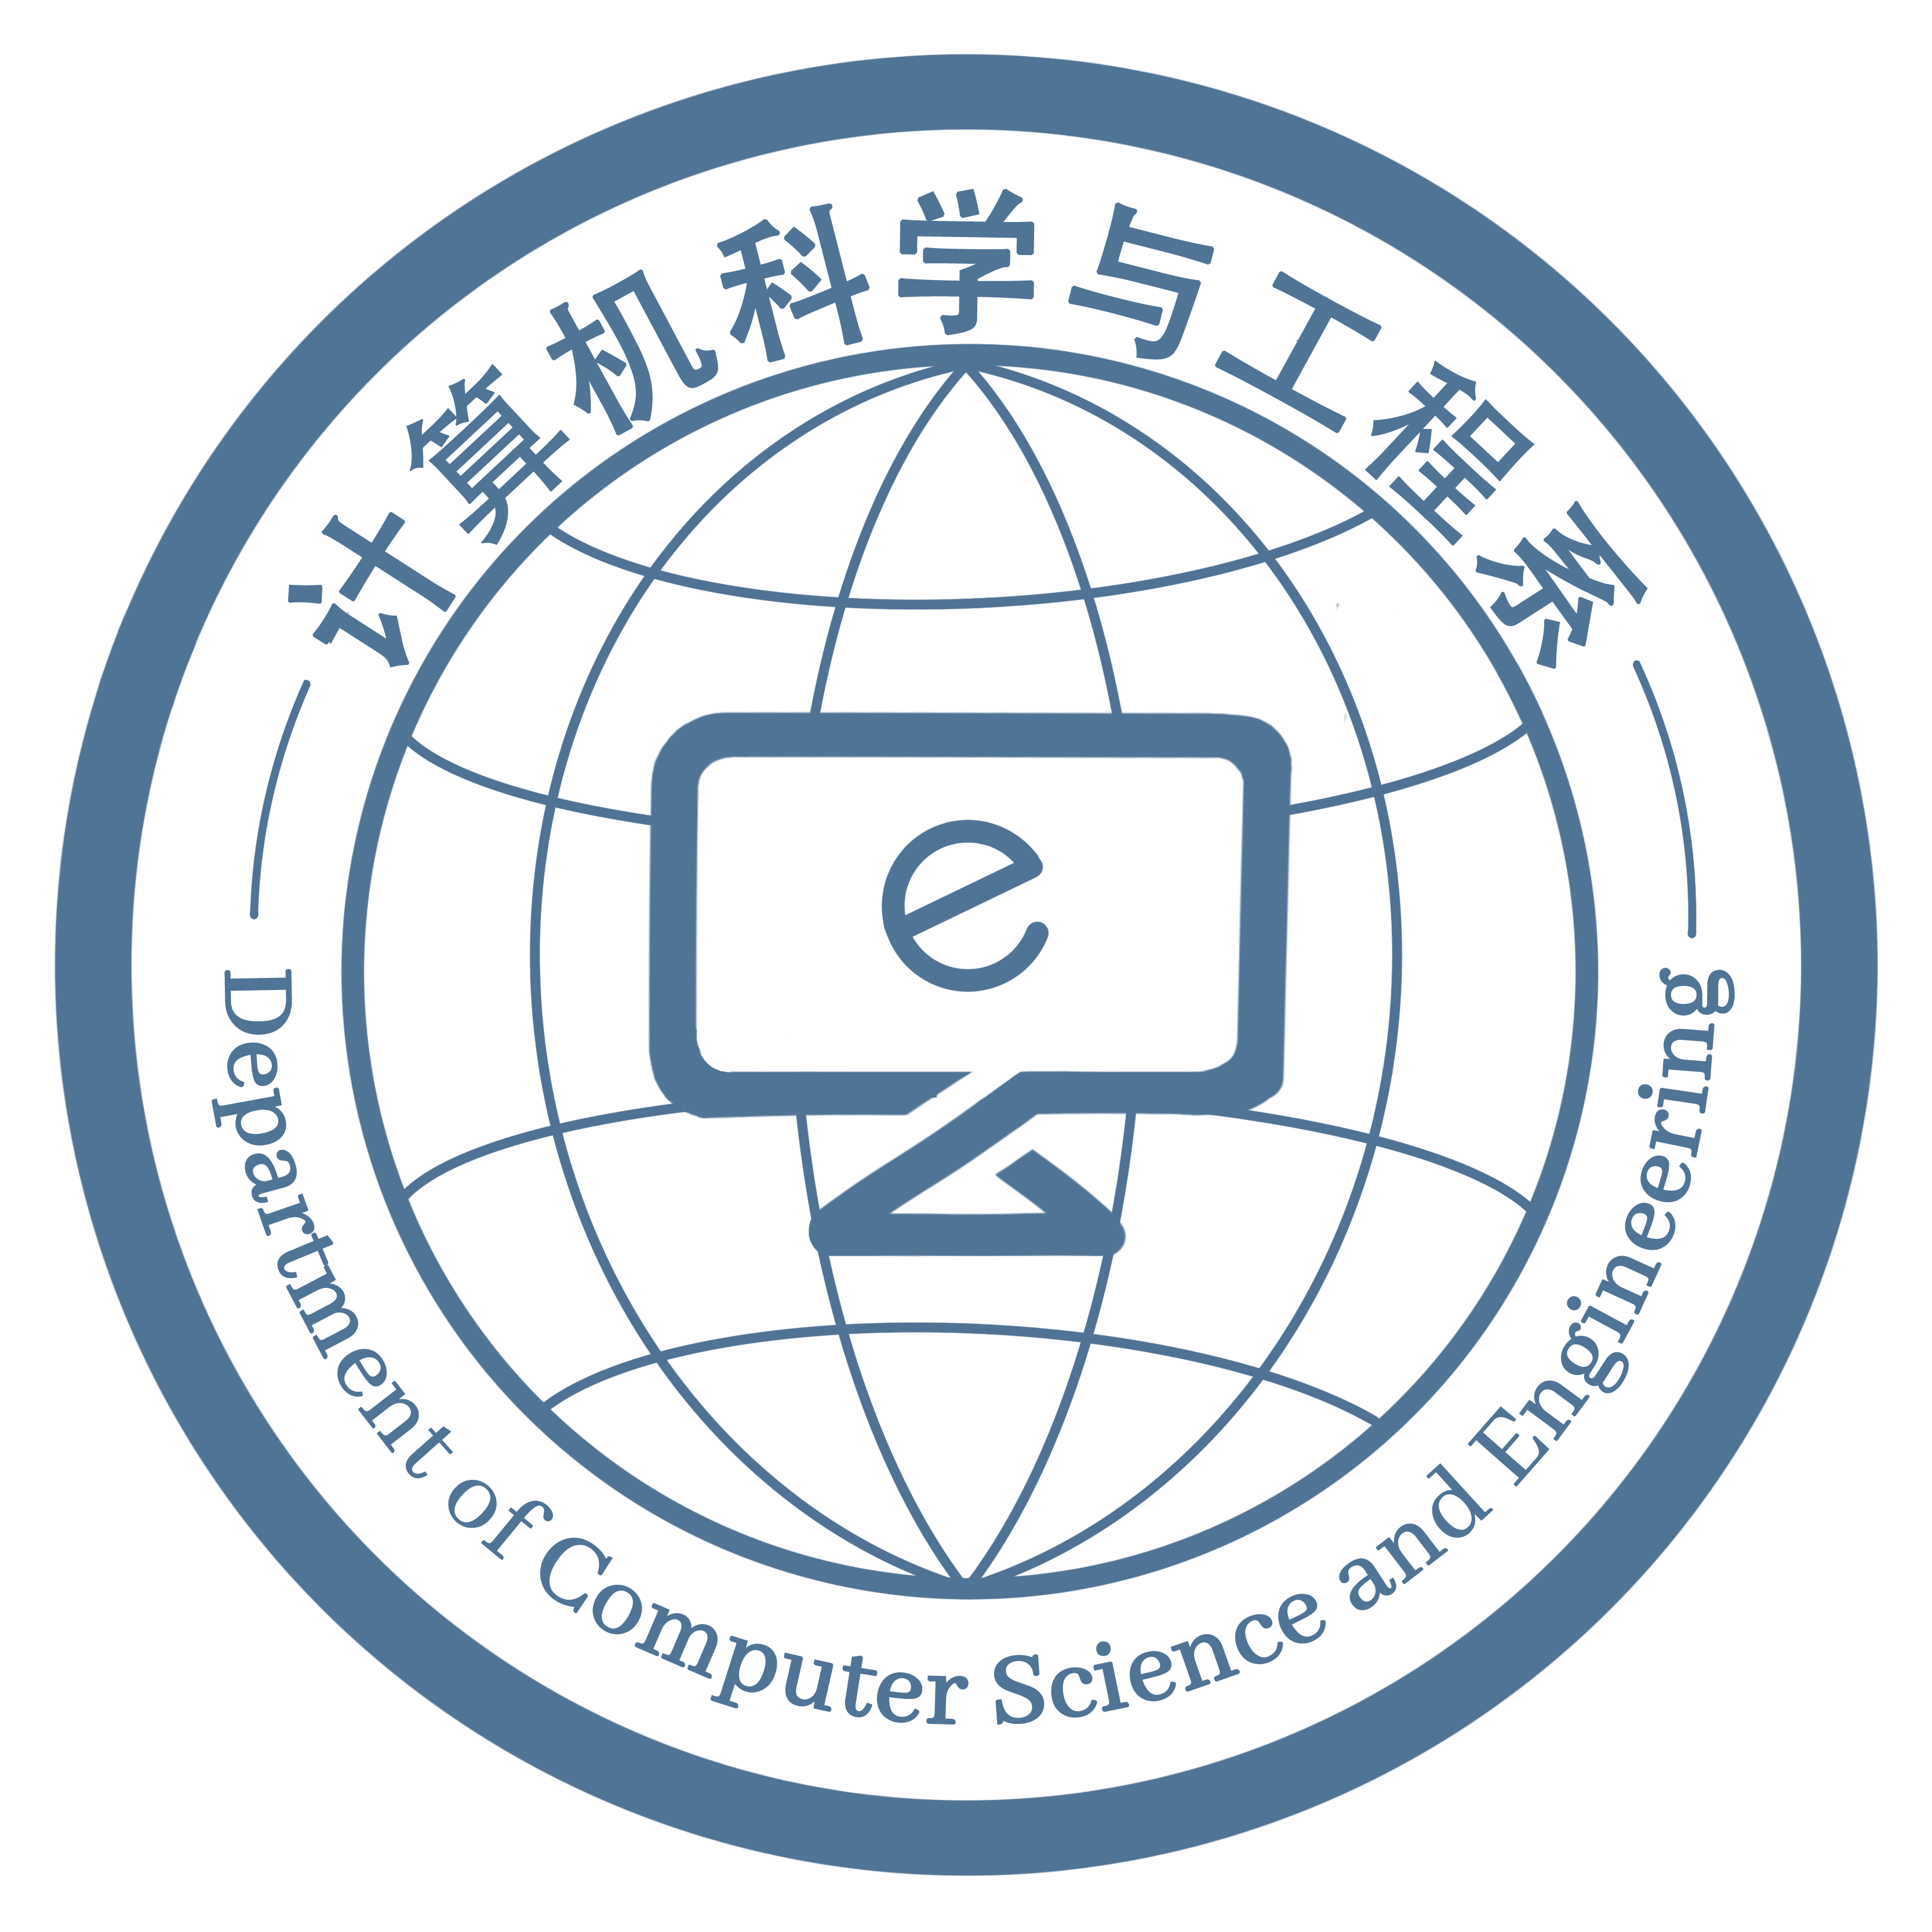 4计算机系logo设计投稿-舒柳2.png